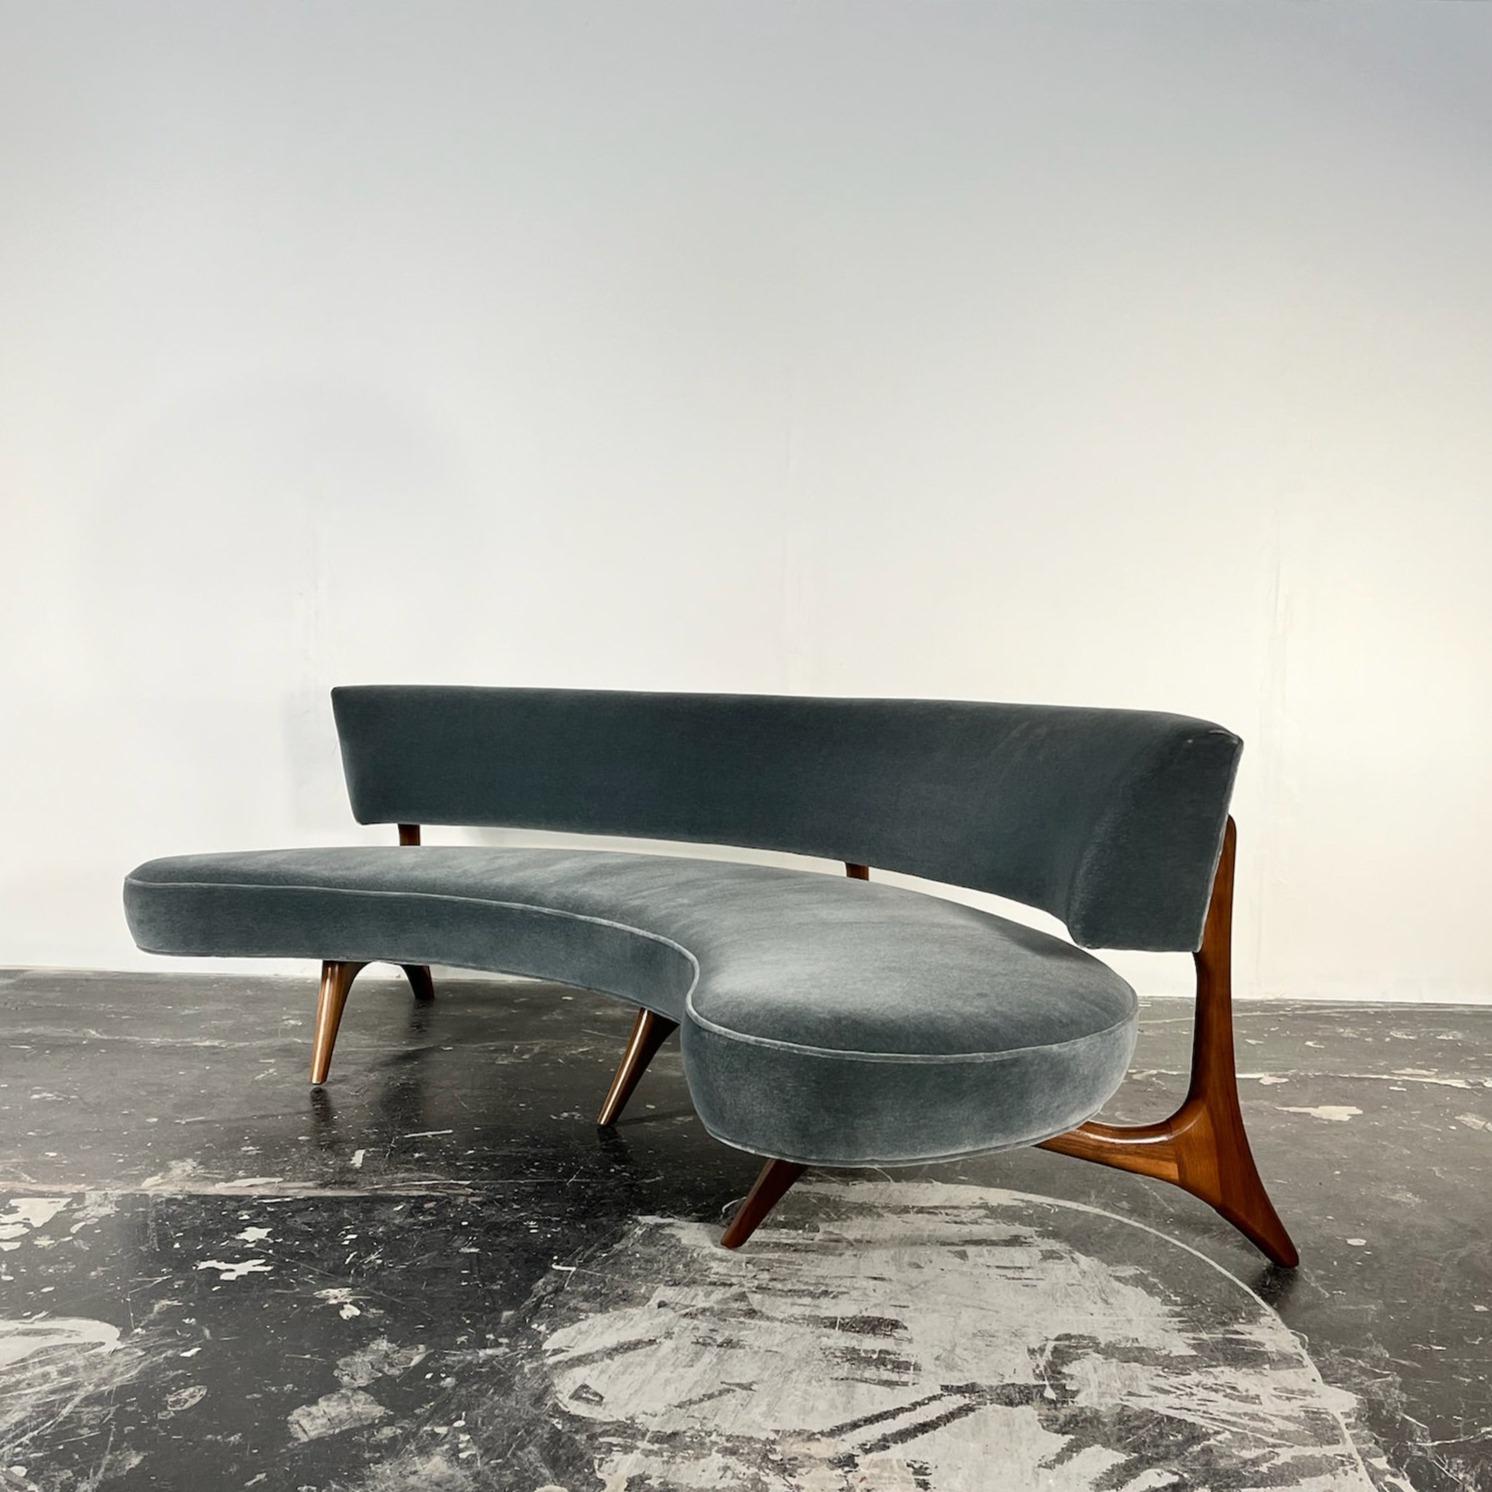 Das Floating Seat and Back Sofa ist ein einzigartiges und ikonisches Möbelstück, das von dem amerikanischen Möbeldesigner Vladimir Kagan entworfen wurde. Dieses Sofa zeichnet sich durch seine besondere Form aus, mit einer geschwungenen Rückenlehne